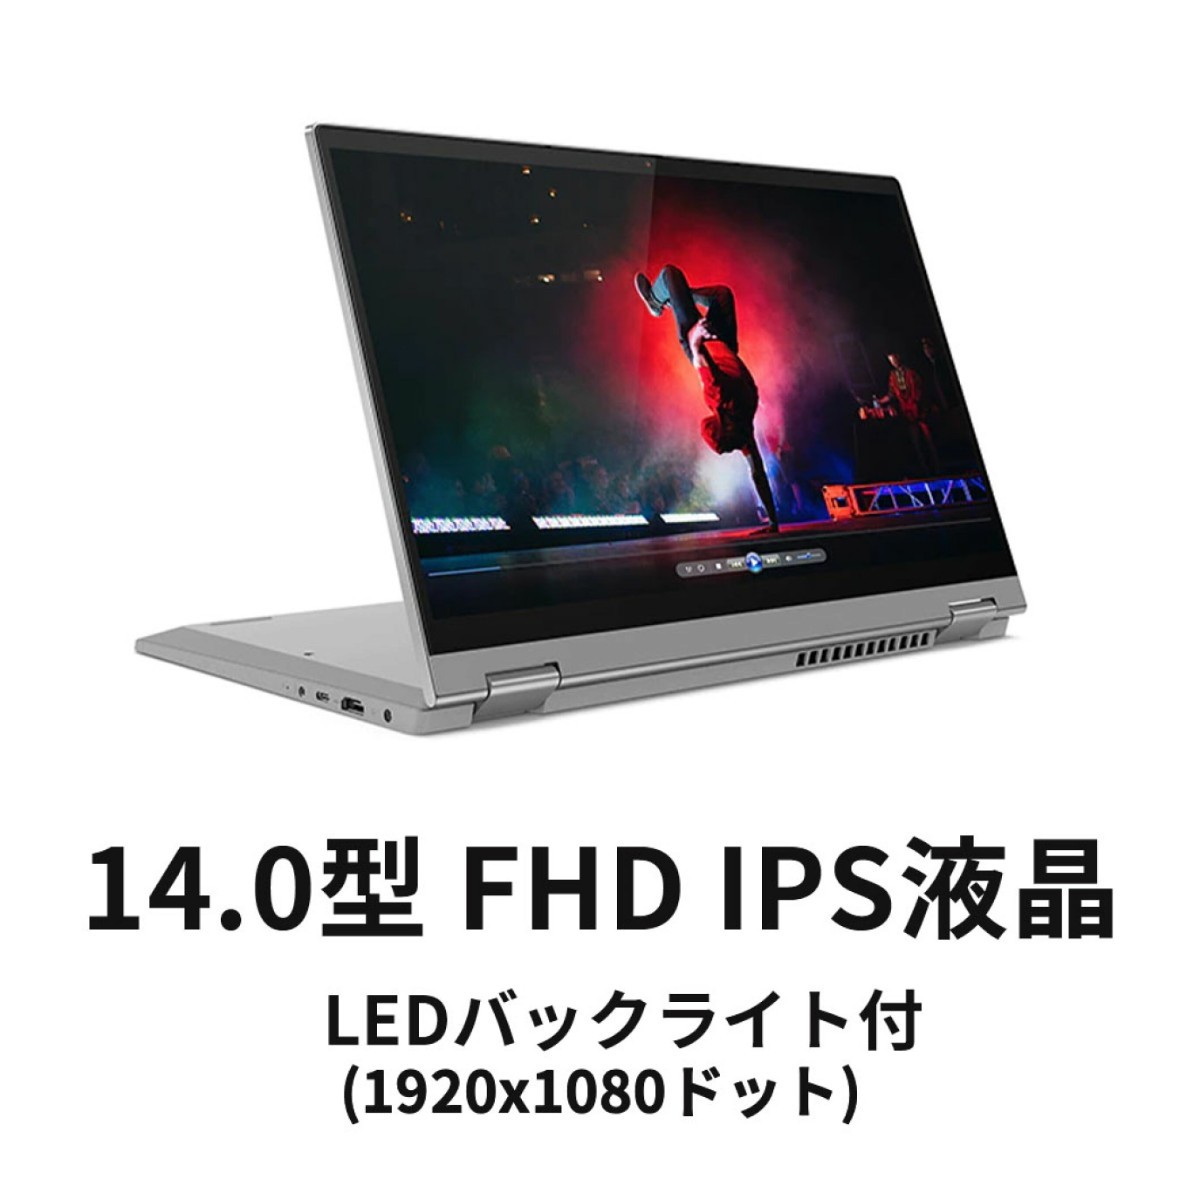 変更OK 【新品未開封】Lenovo Ideapad Flex 550 通販